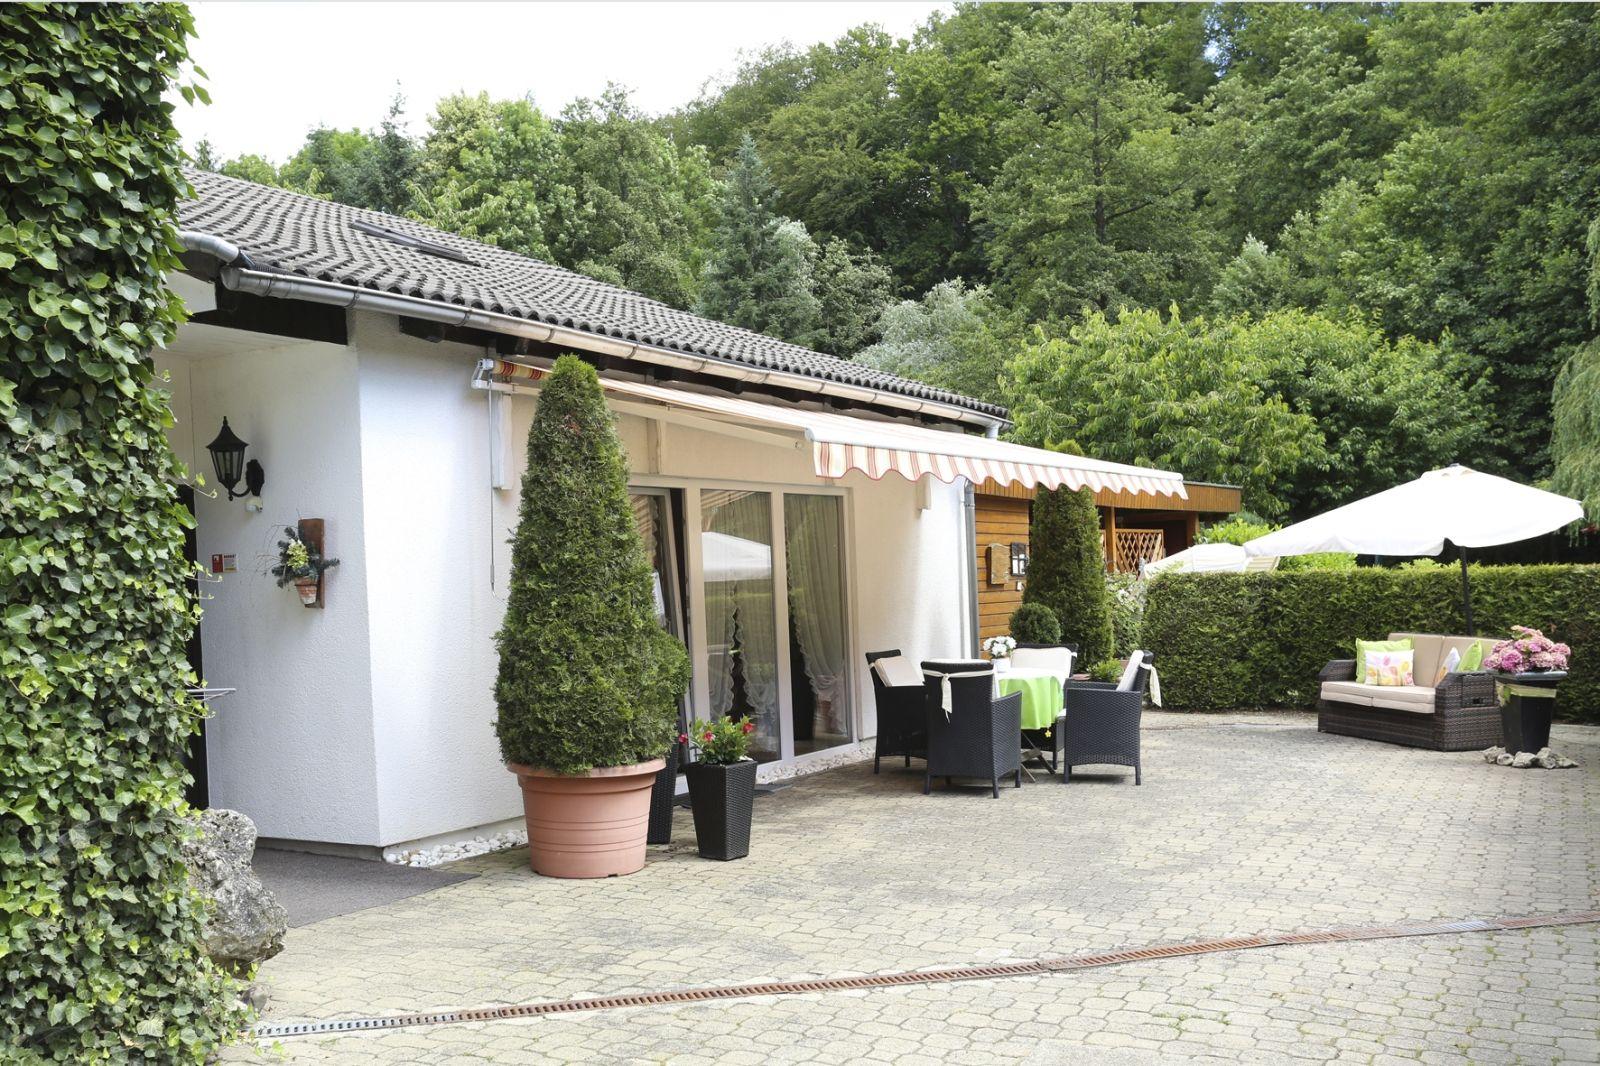 Ferienhaus in Walkenried mit Schöner Terrasse Ferienhaus in Europa